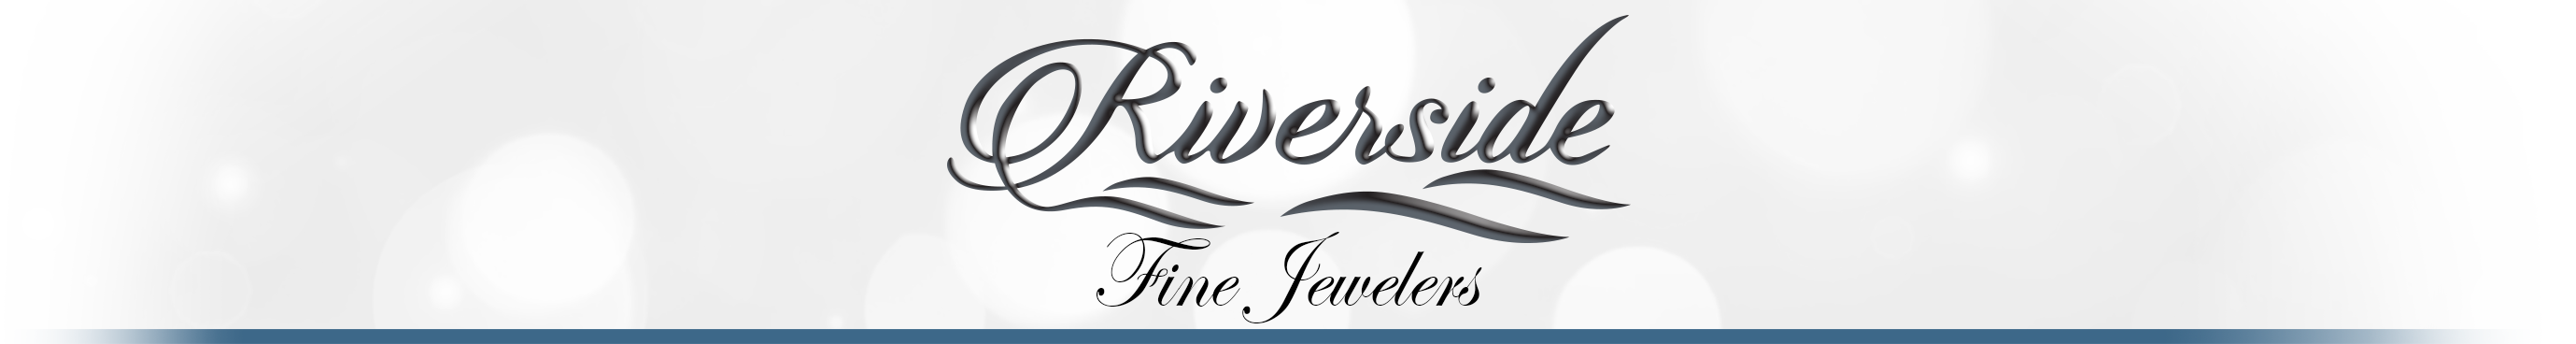 Riverside Fine Jewelry Logo